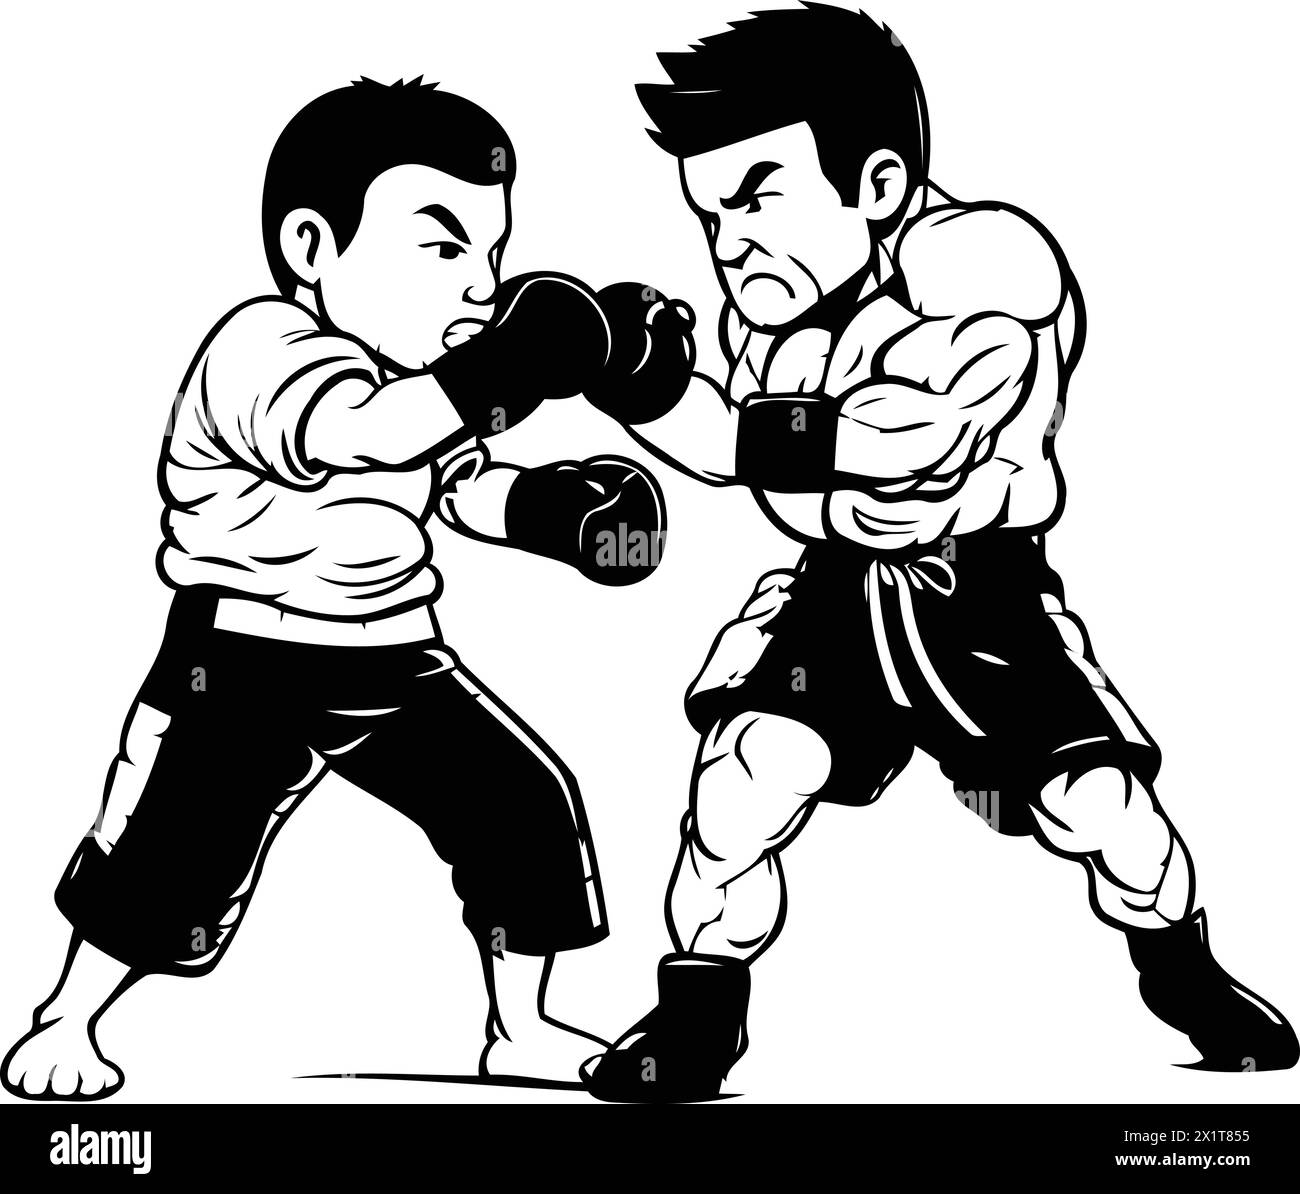 Deux kickboxers en sparring. illustration vectorielle de deux chasseurs kickbox. Illustration de Vecteur